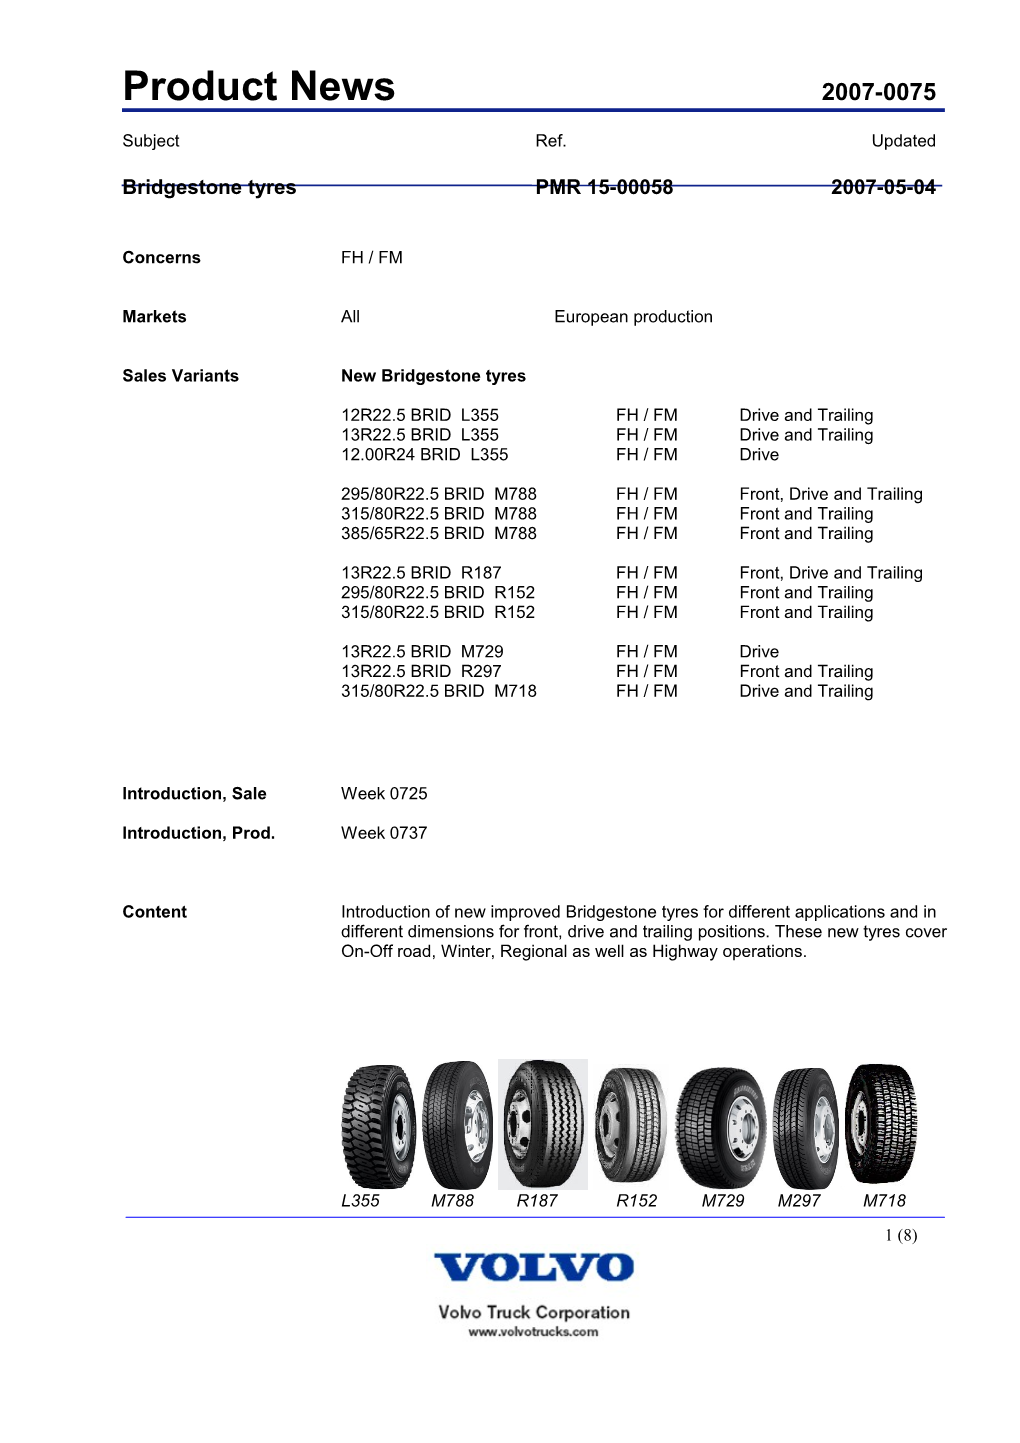 Bridgestone Tyrespmr 15-000582007-05-04